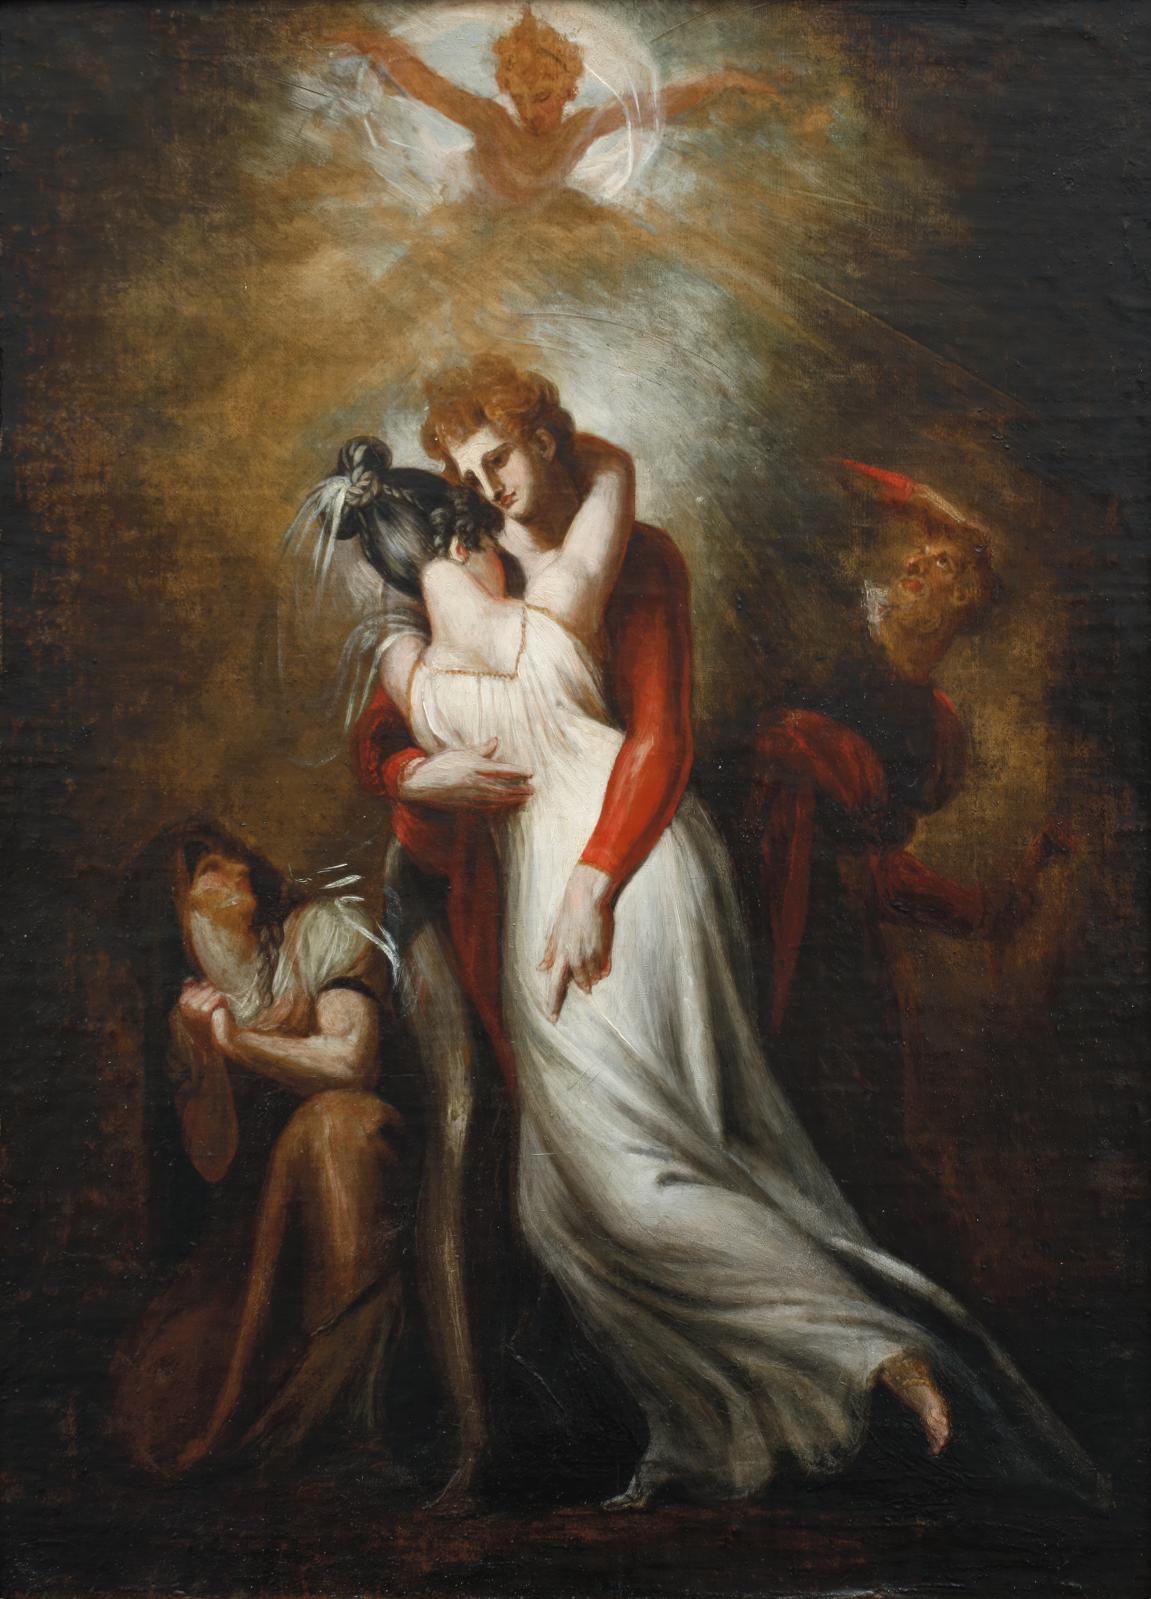 L’Oberon en trois tableaux par Füssli